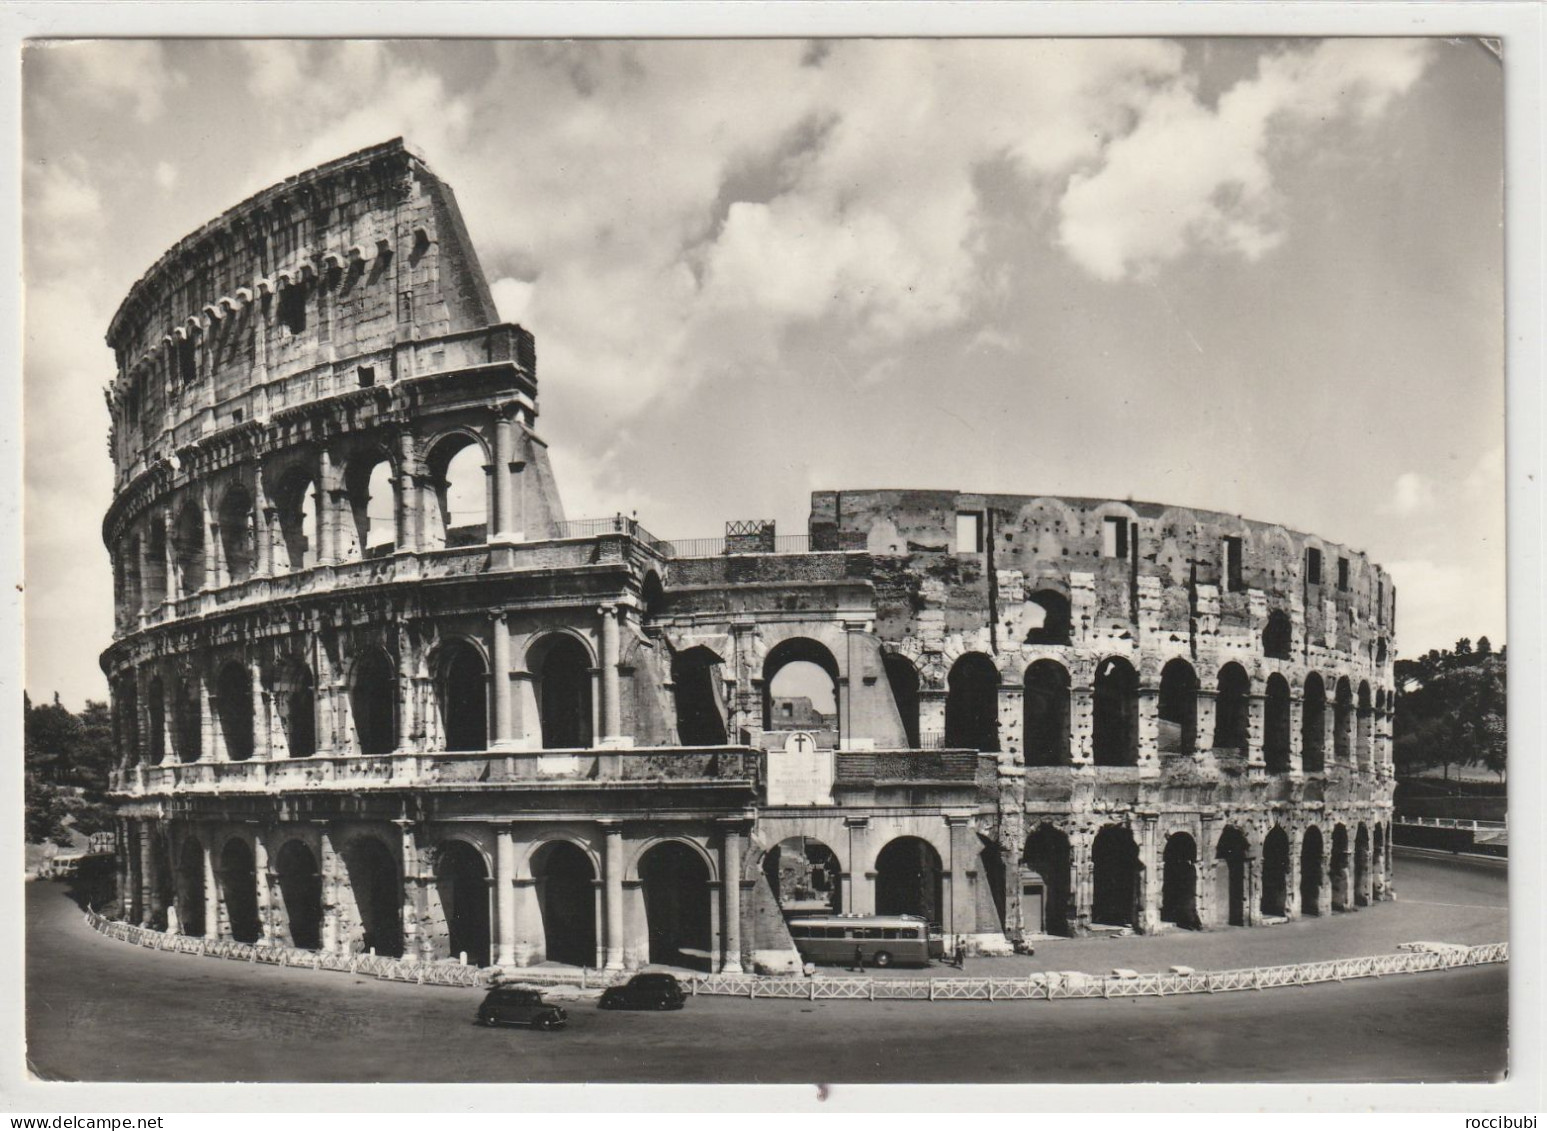 Roma, Kolosseum, Italien - Kolosseum